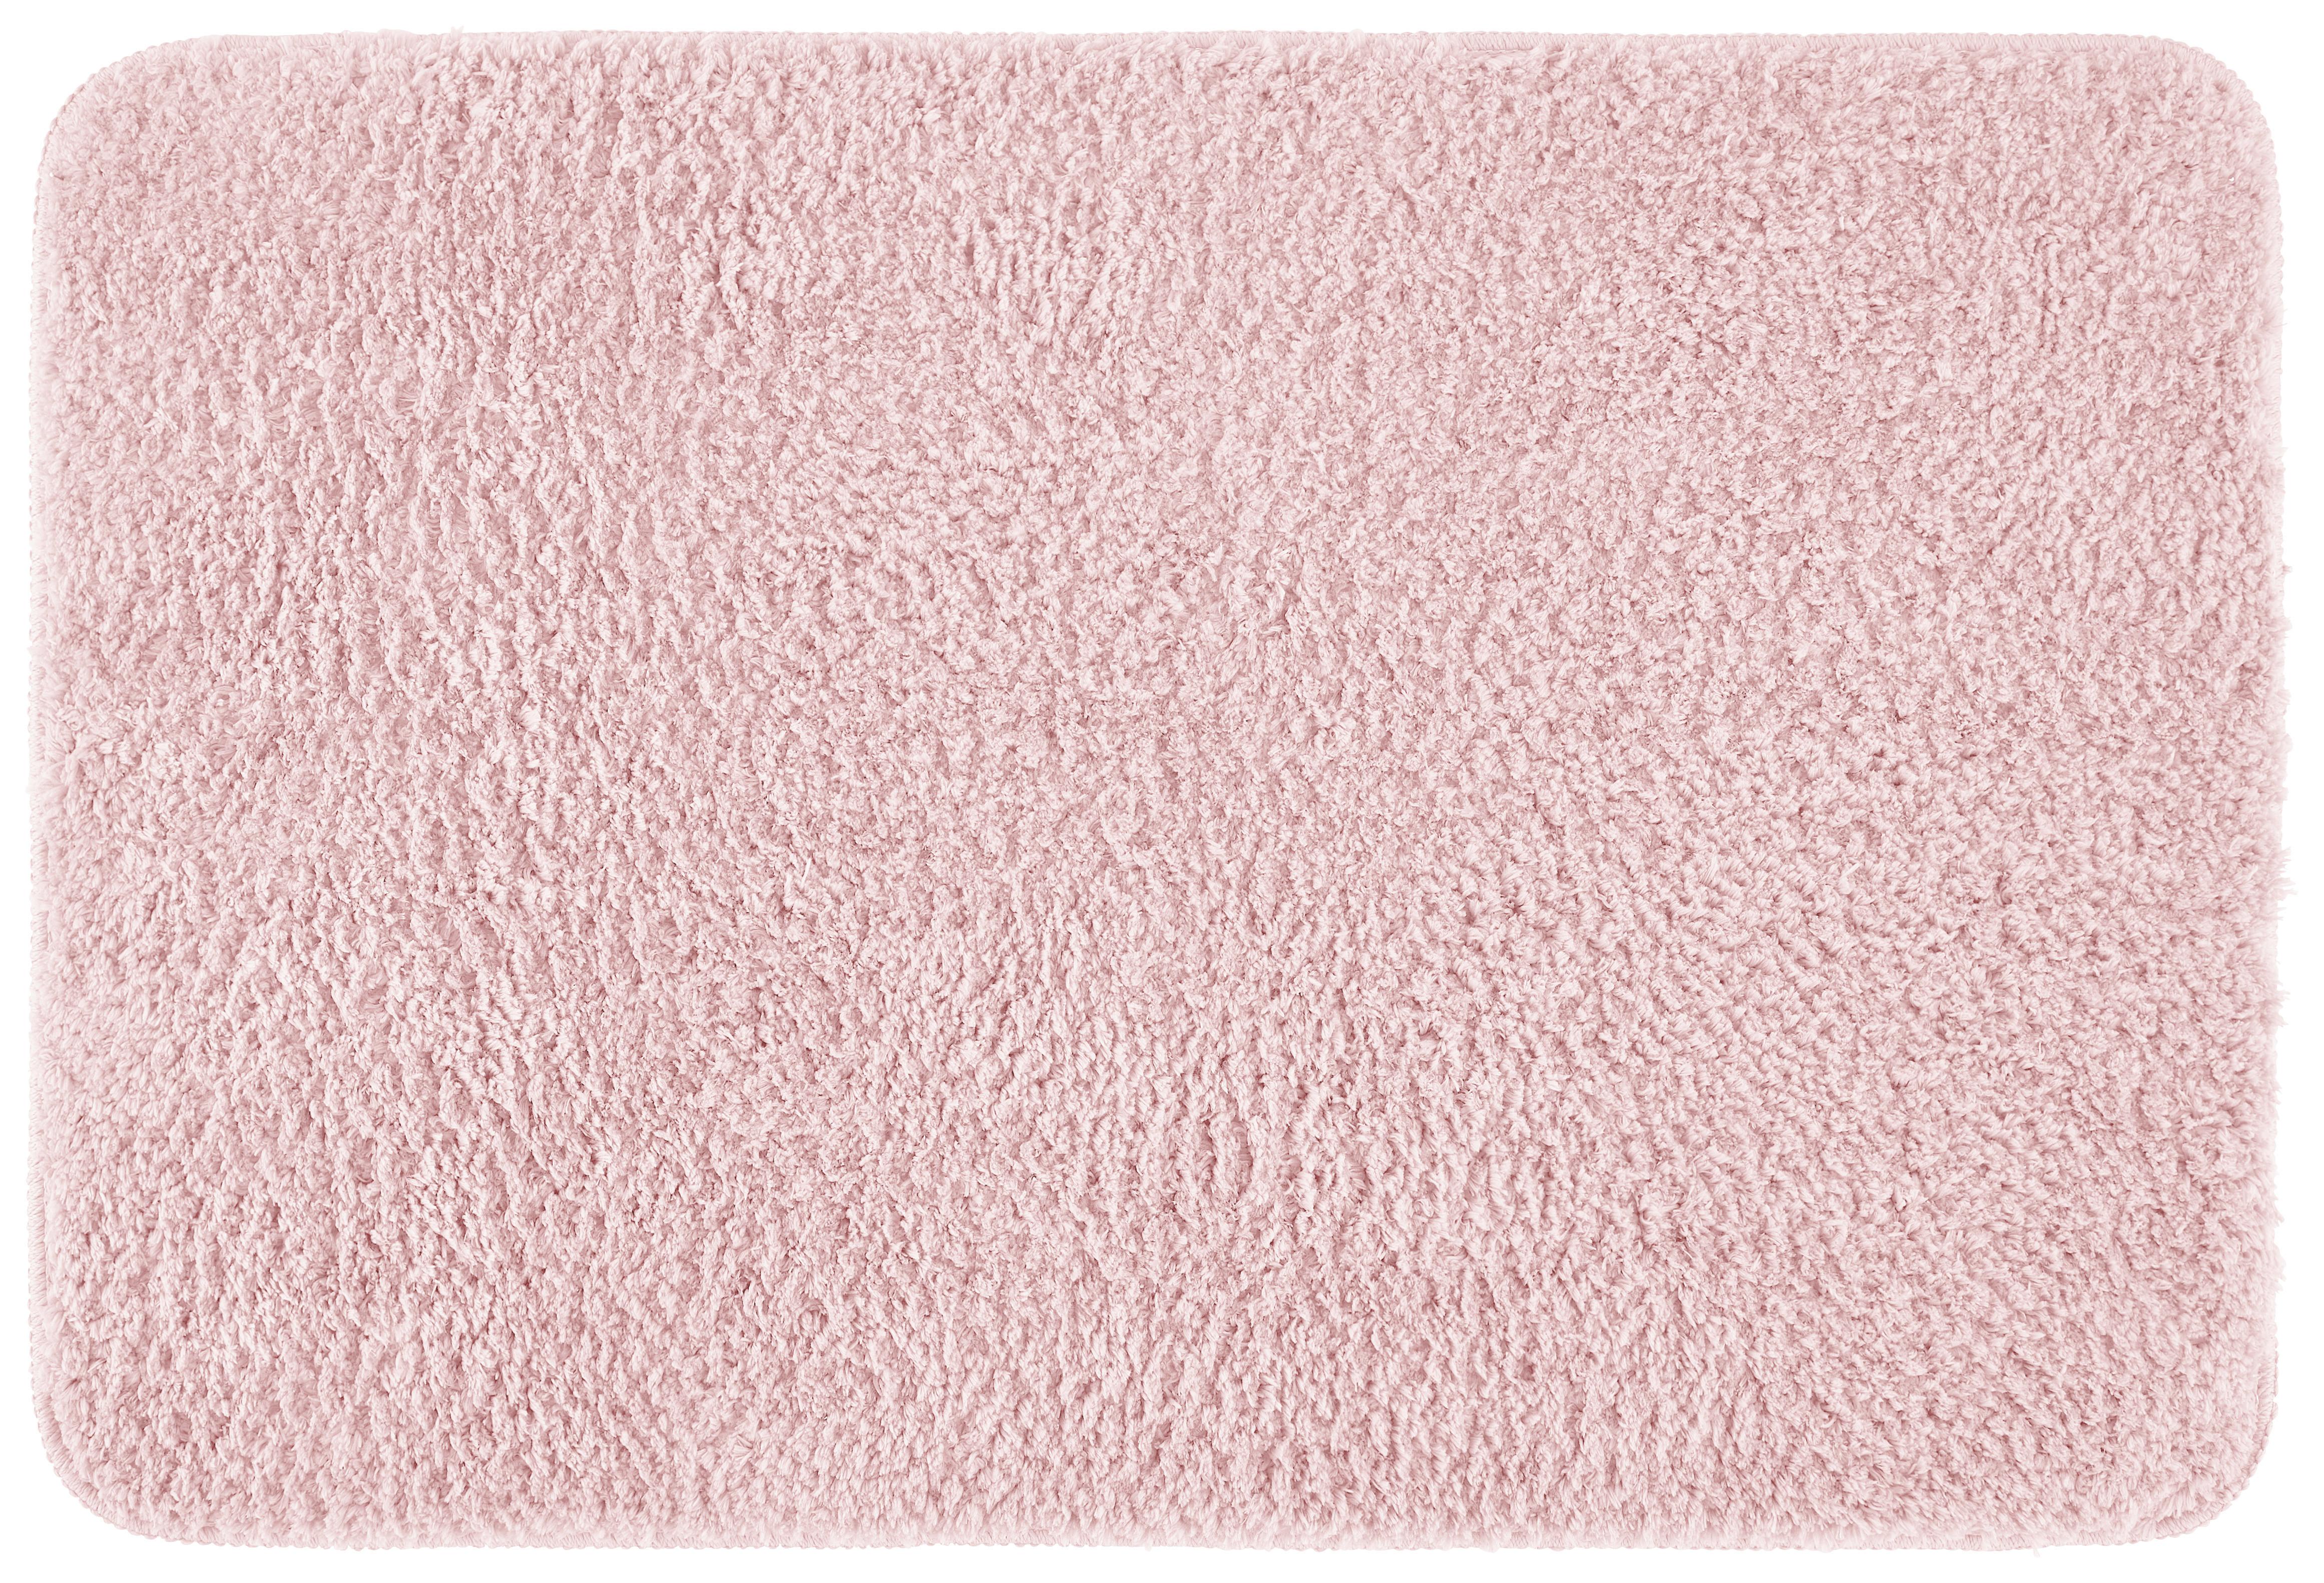 Předložka Koupelnová Vivien, 60/90cm, Růžová - růžová, textil (60/90cm) - Premium Living